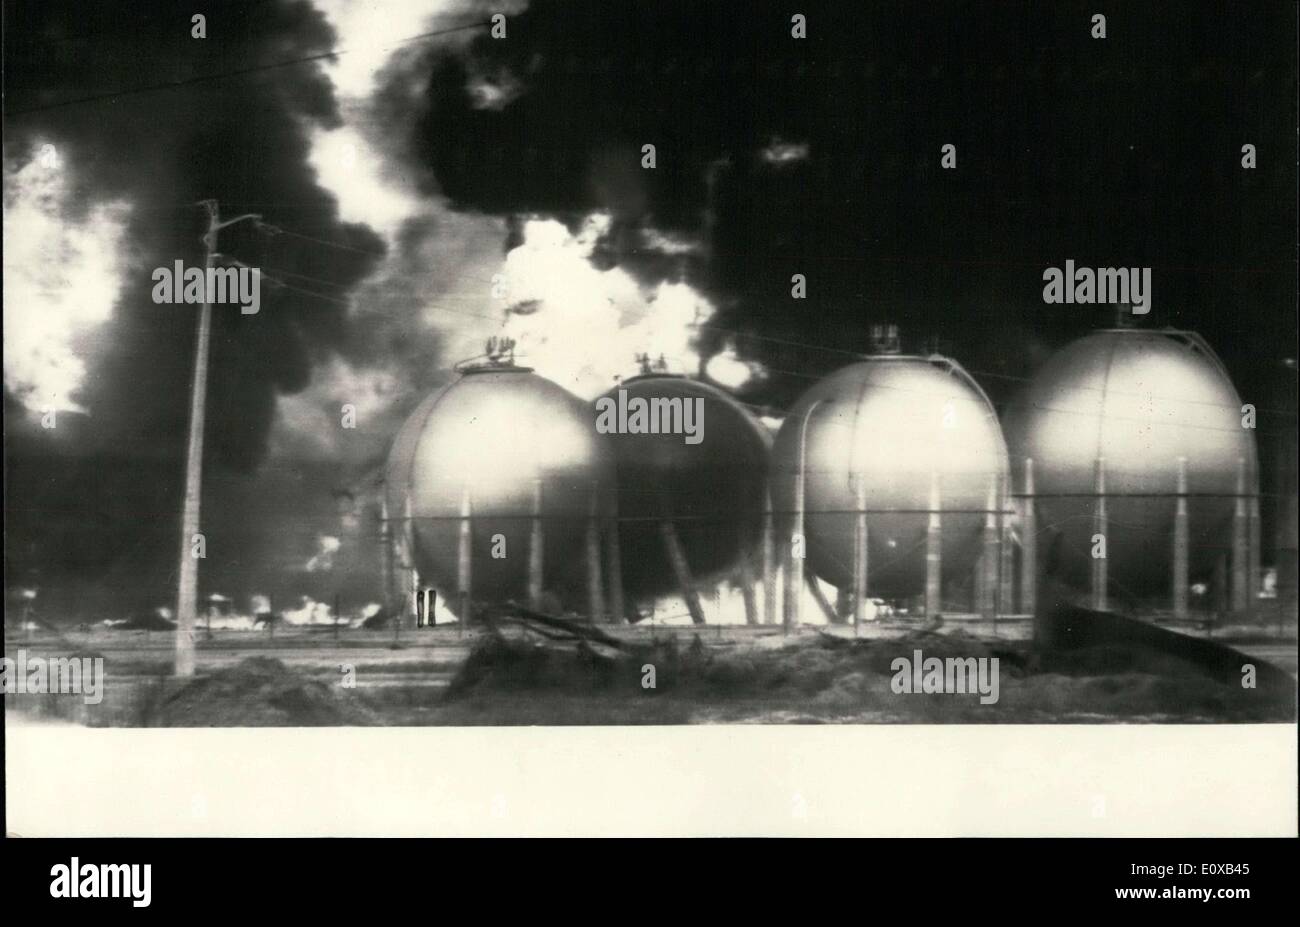 Gen 04, 1966 - Un incendio accompagnato dall'esplosione di diversi serbatoi sferici è stata dichiarata martedì mattina nella raffineria di Feyzin. La raffineria di Fezin è uno dei più importanti in Europa e l'esplosione ha causato oltre trenta morti. Foto Stock